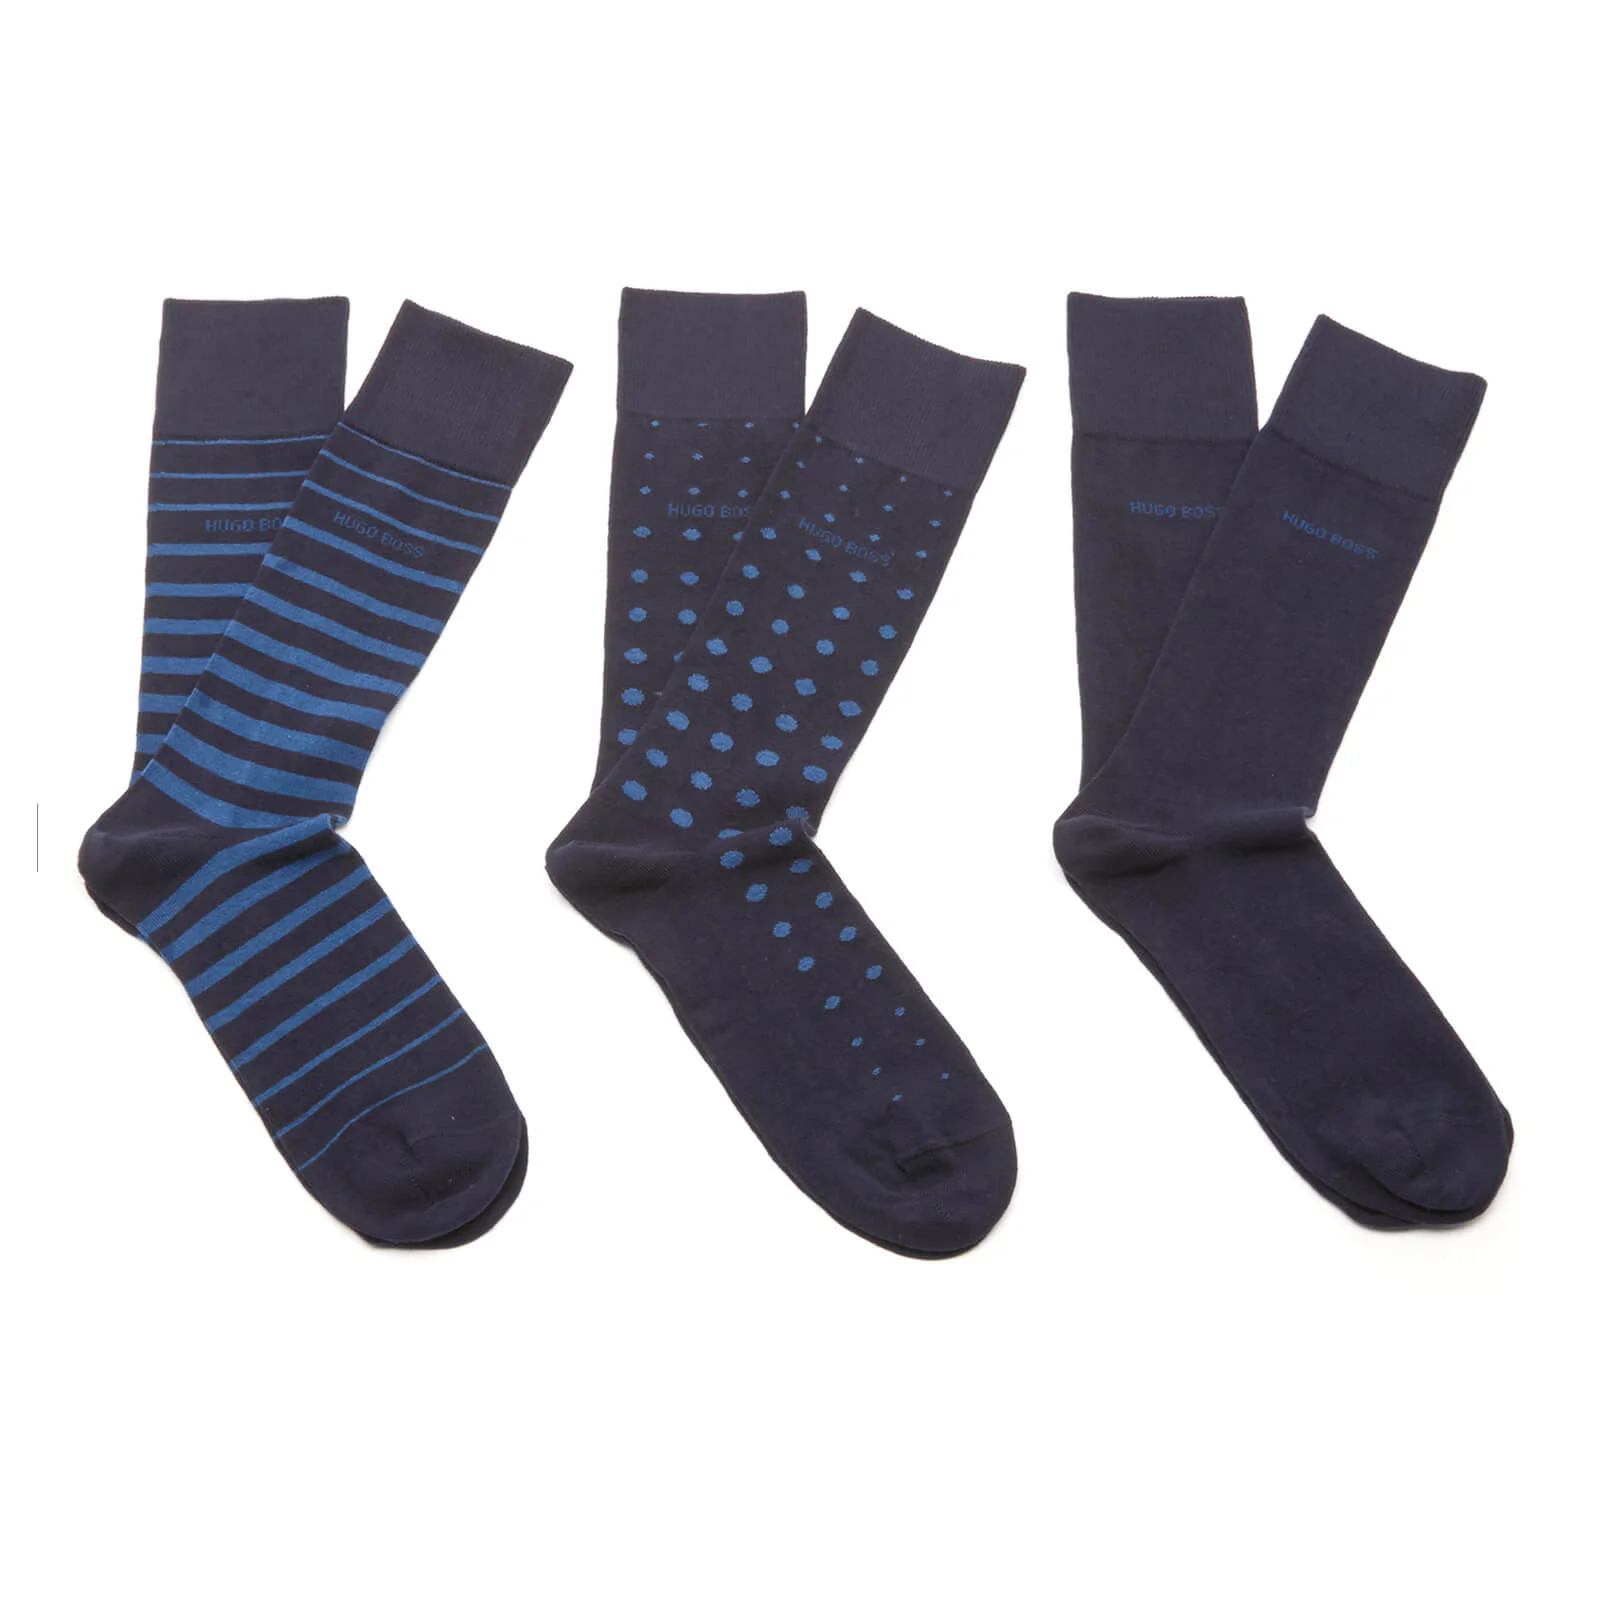 BOSS Hugo Boss Men's 3 Pack Socks - Blue Image 1